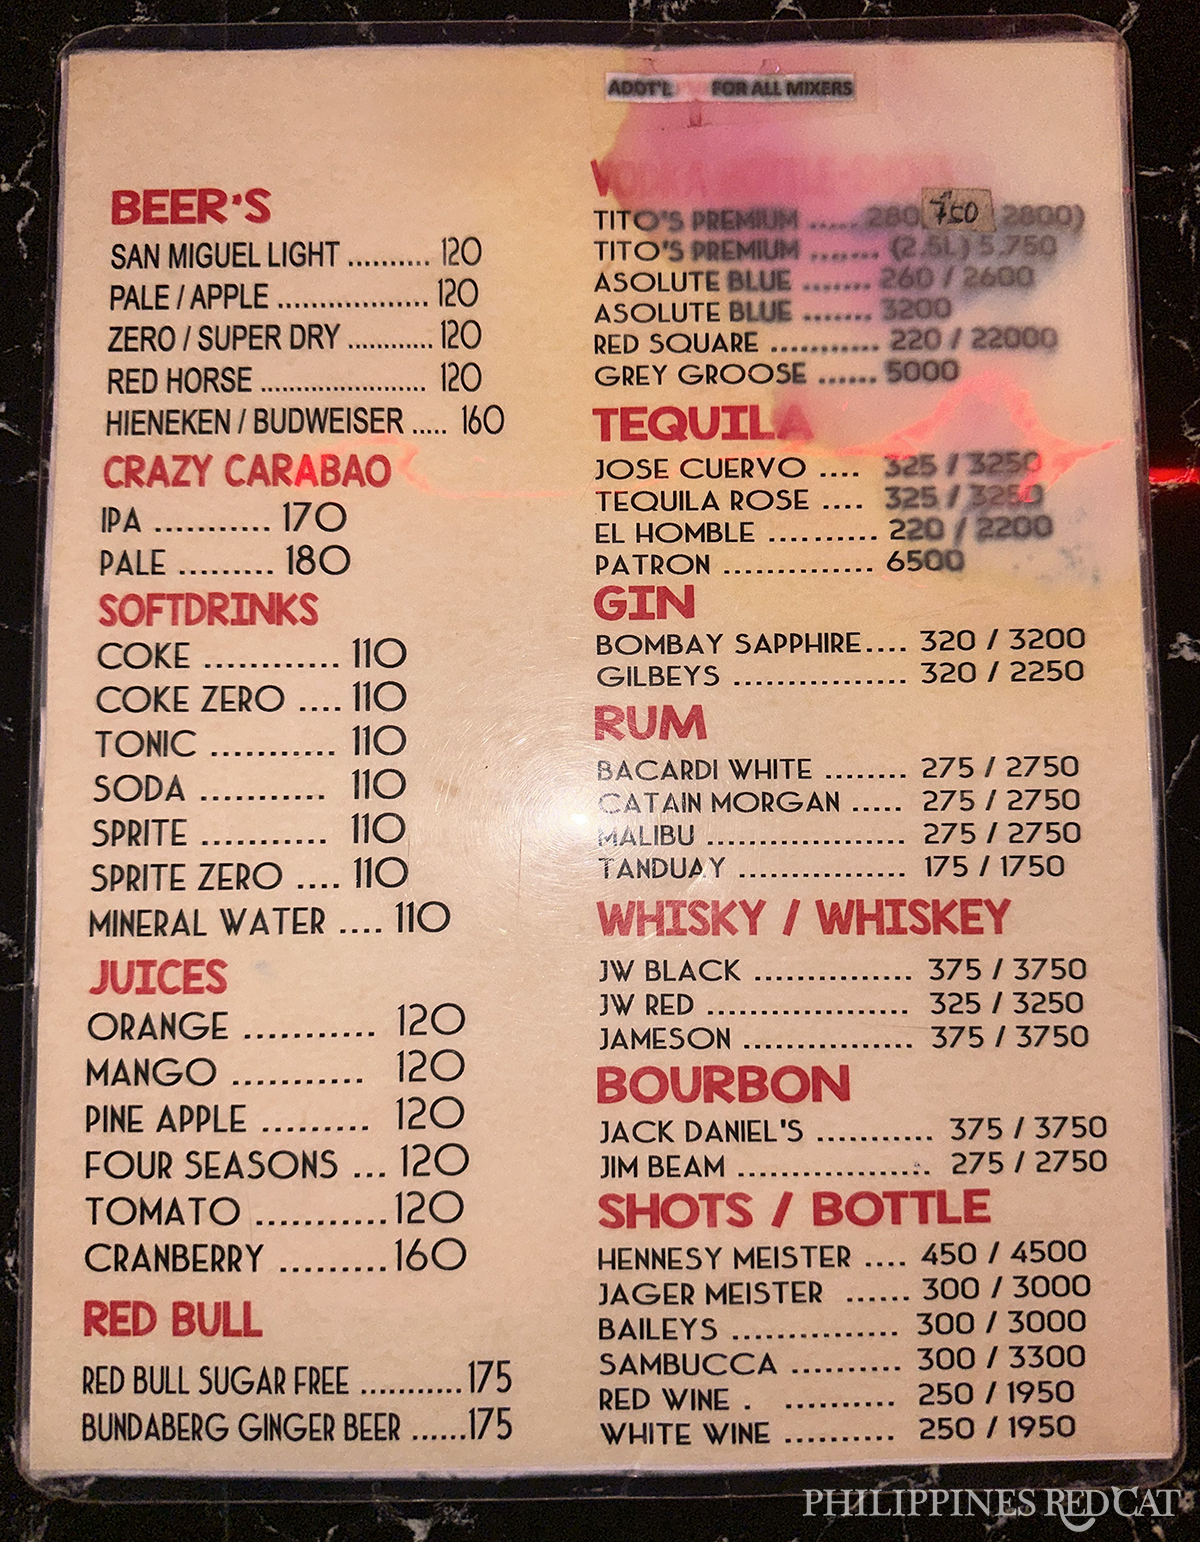 Manila Nightclub Drink Prices